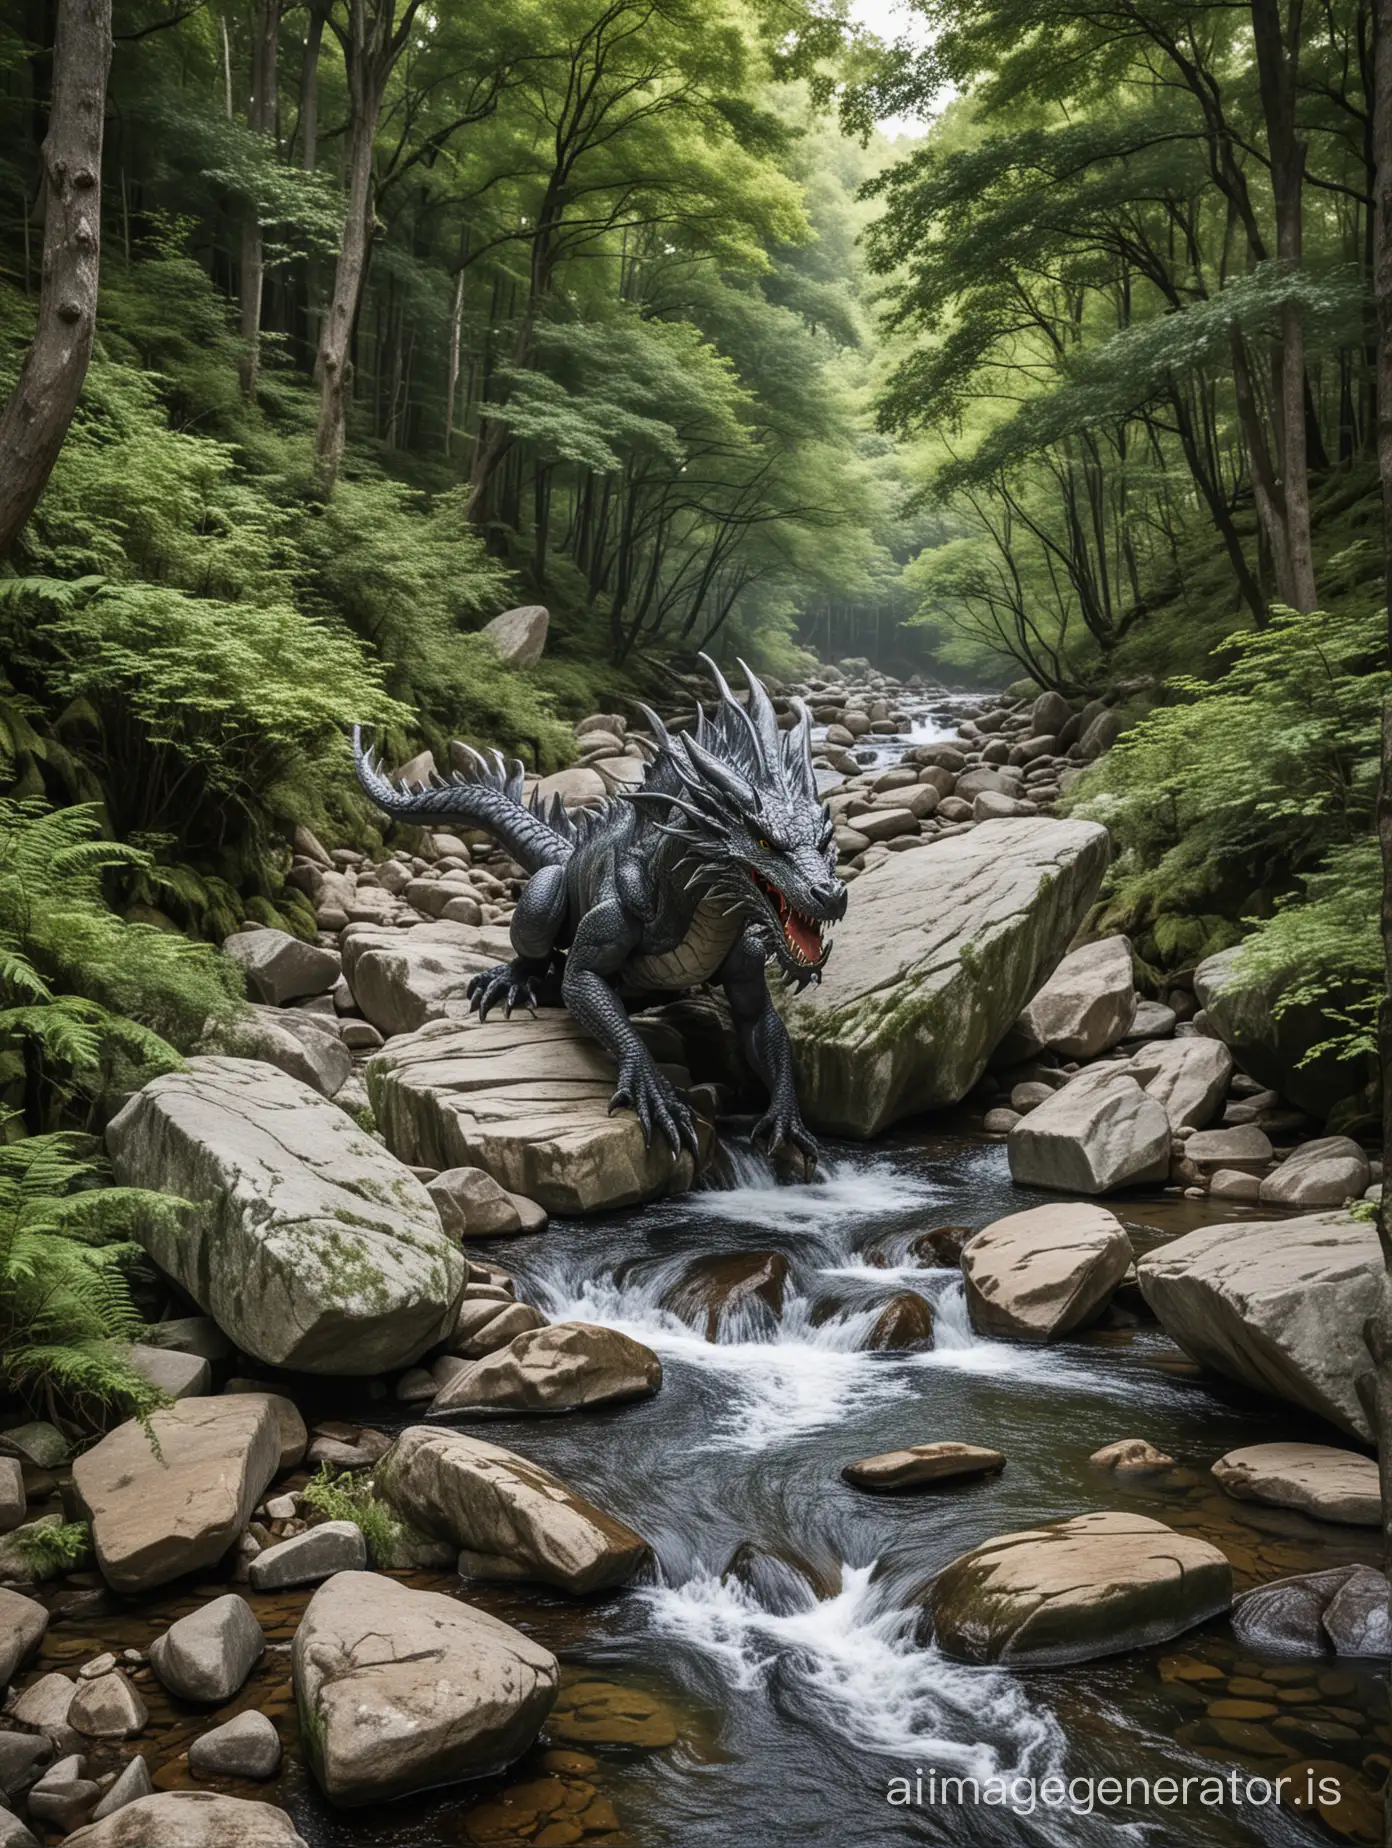 un dragon sortant d'une rivère de forêt bordée par de grandes pierres arrondies de granit